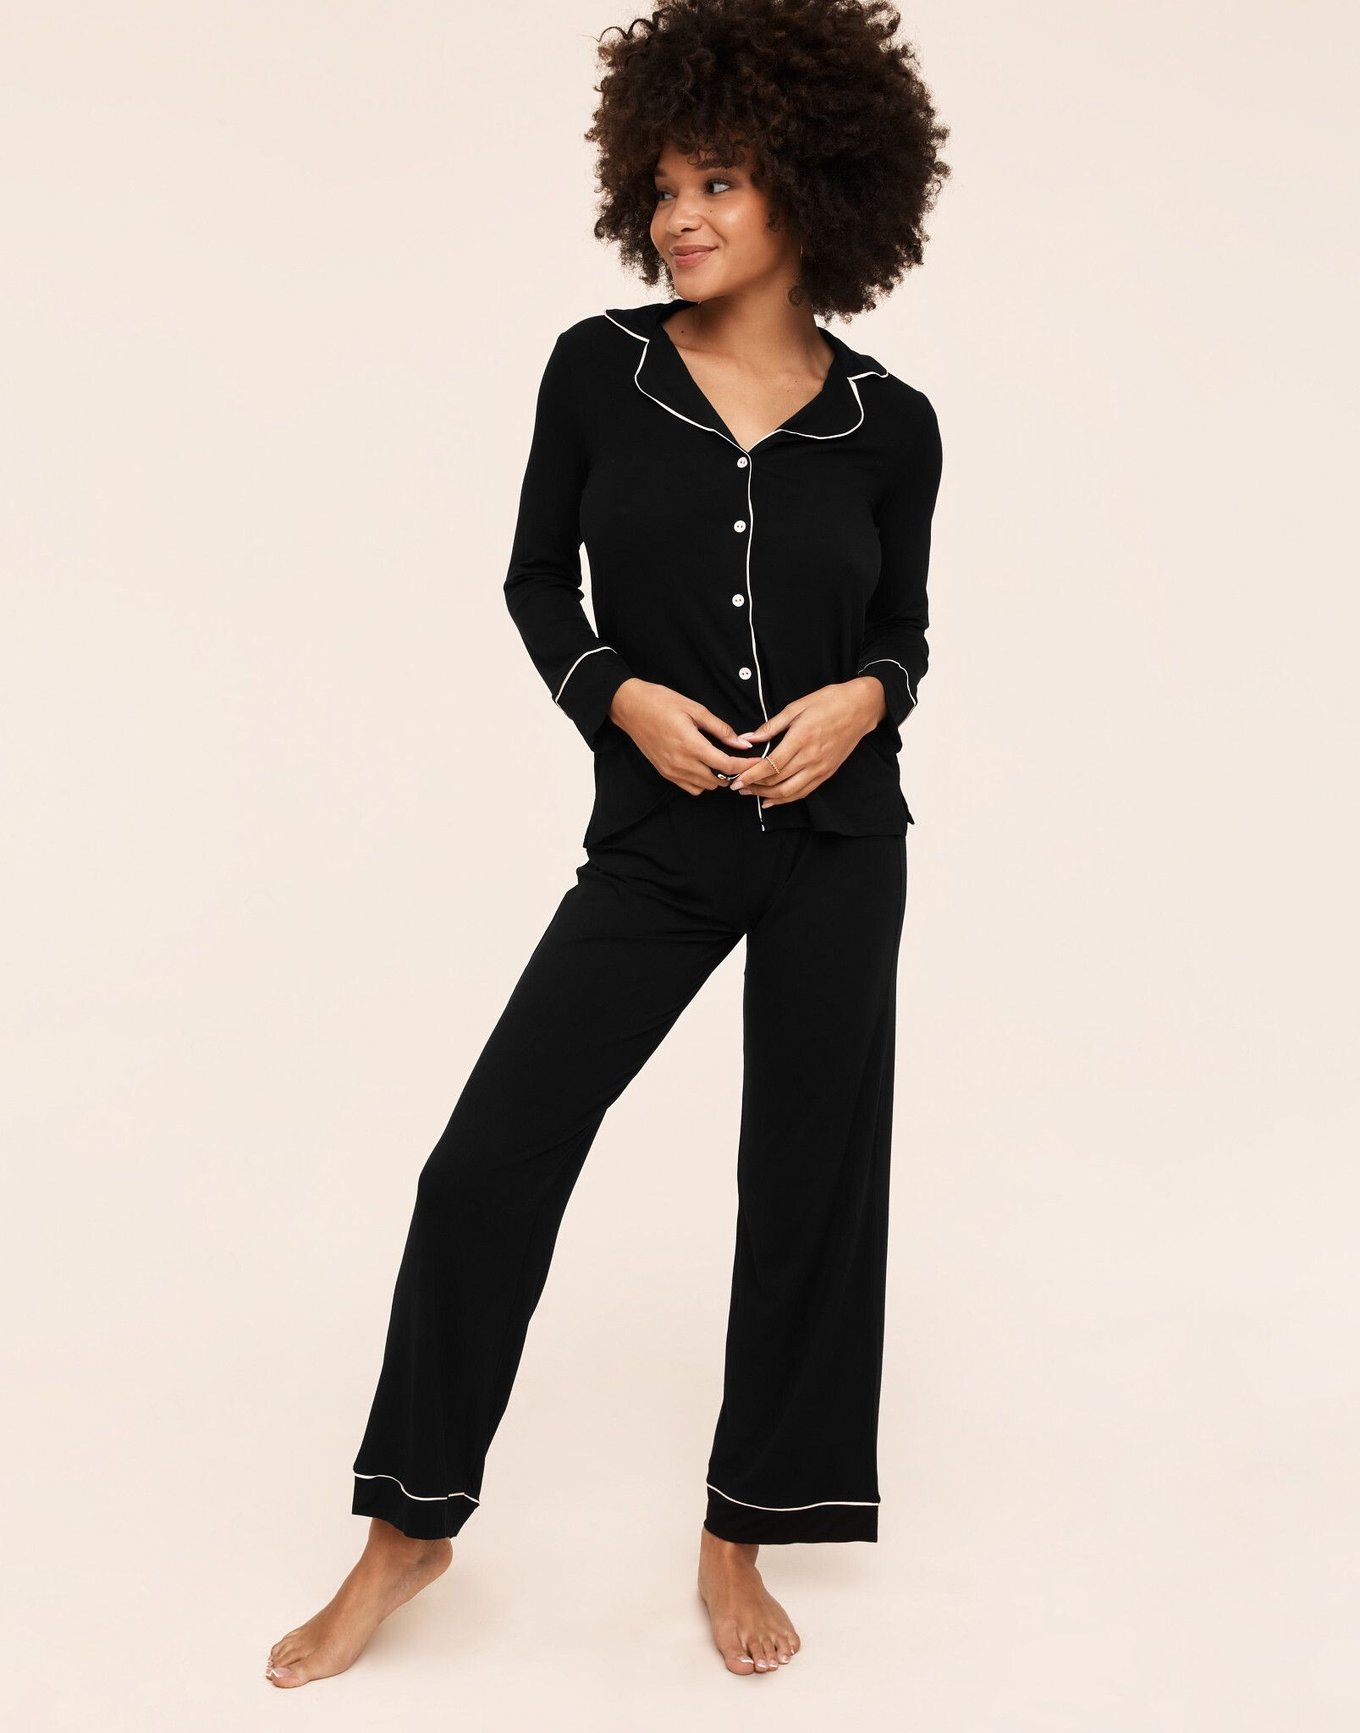 Matilda Black Pajama Shirt and Pants Set, XS-XL